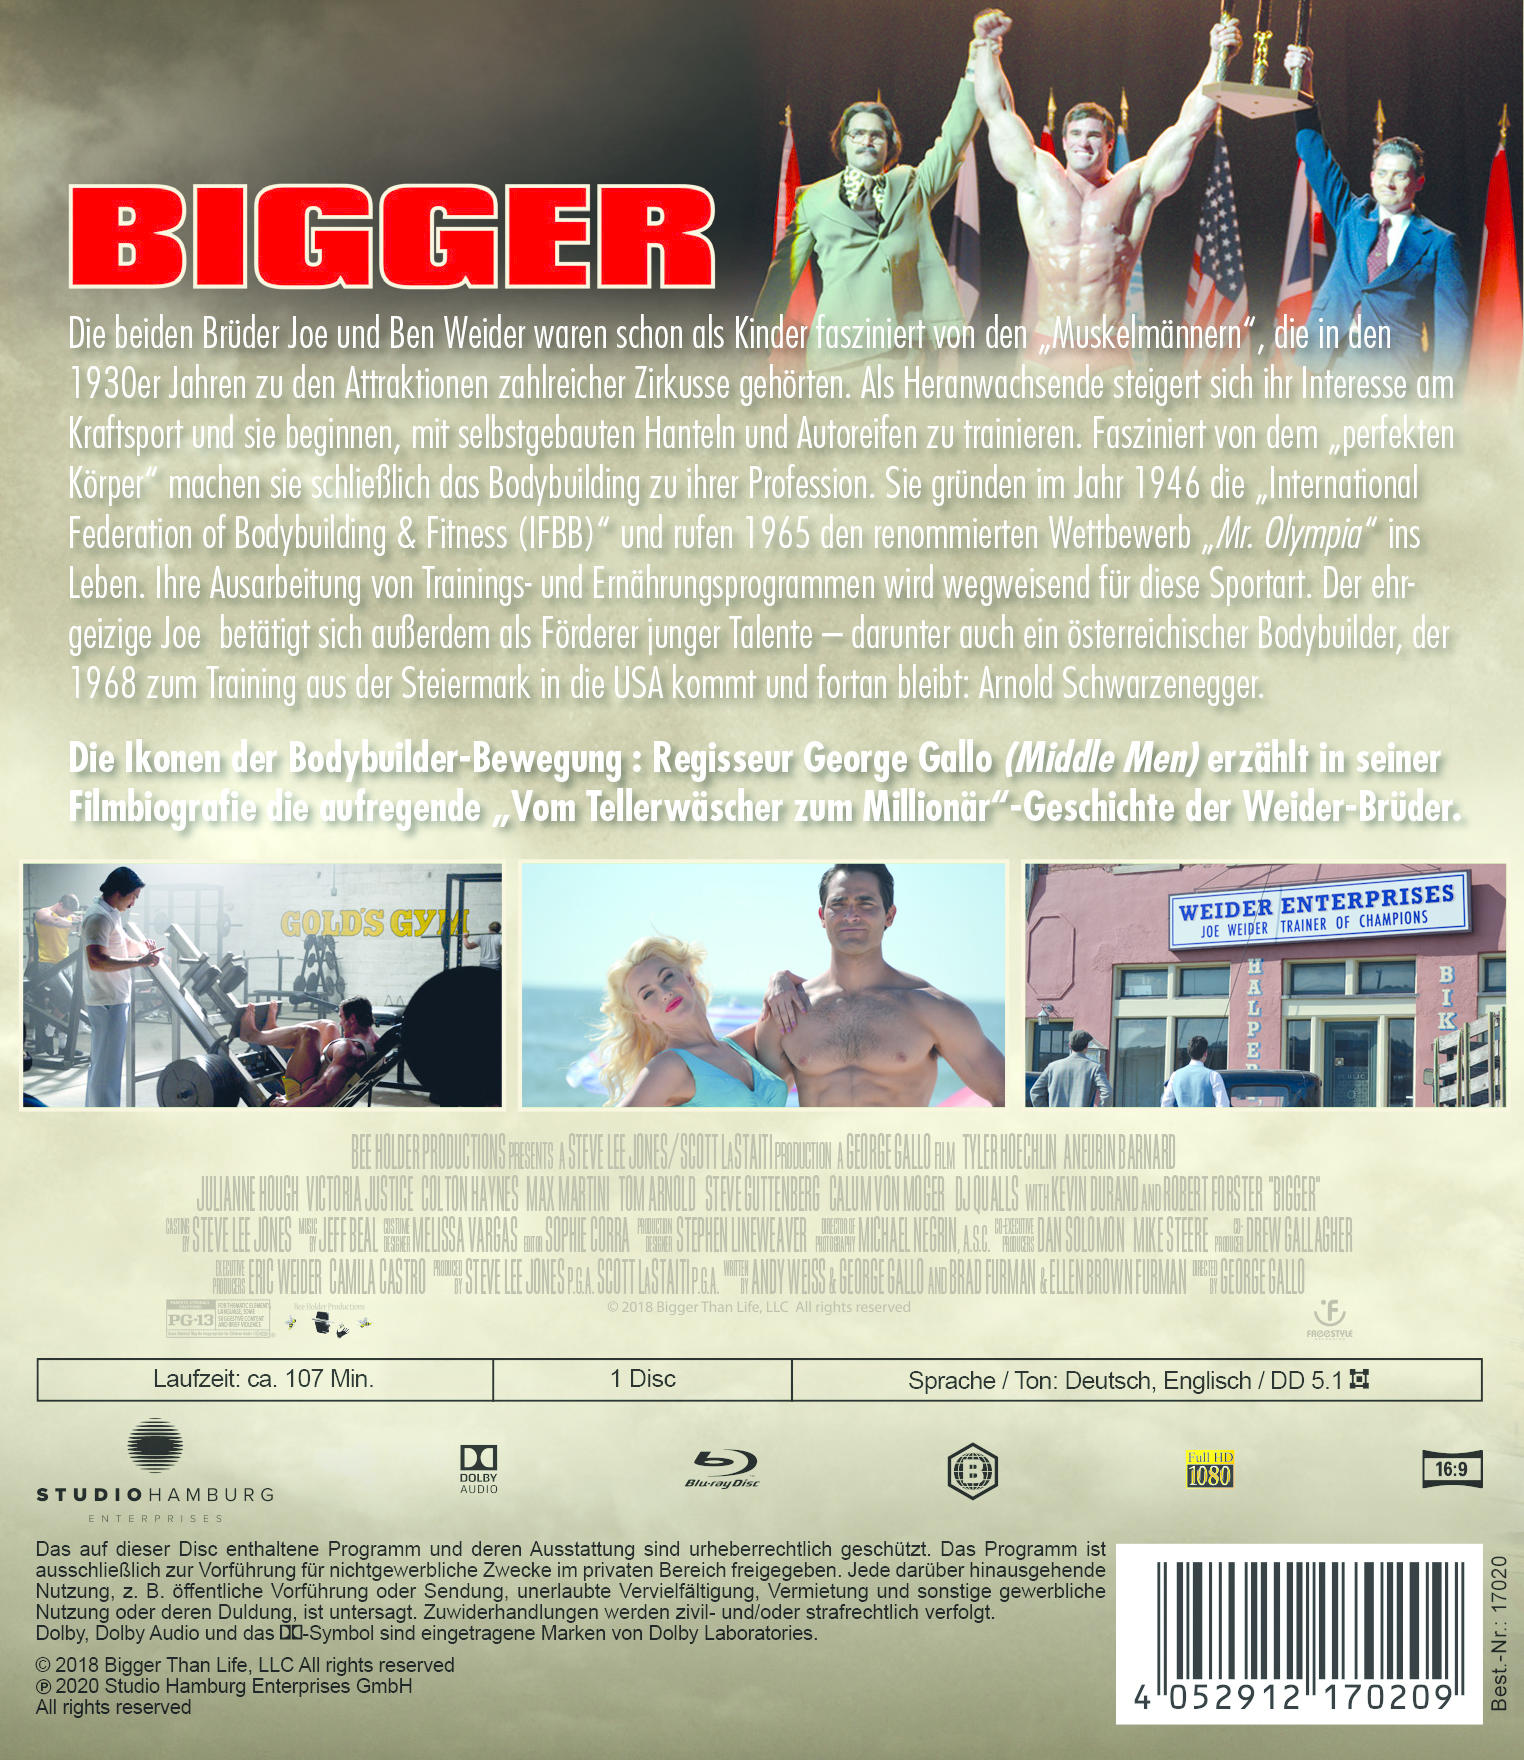 Weider Bigger - Joe Story Die Blu-ray